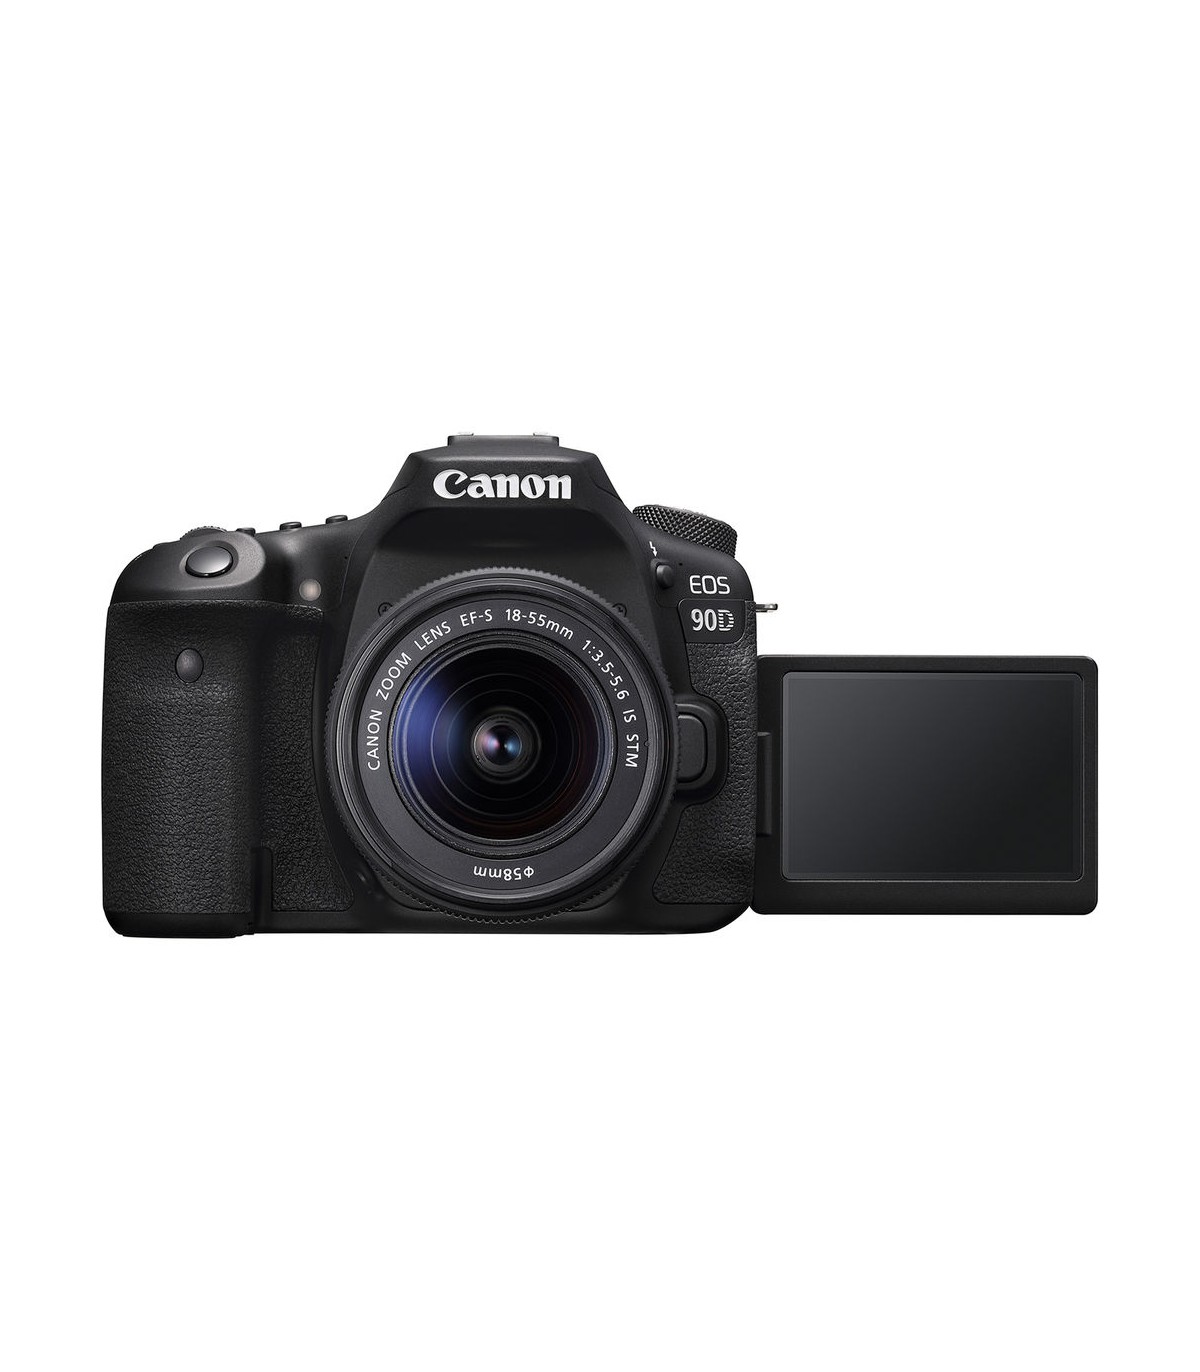 مشخصات، قیمت و خرید دوربین دیجیتال کانن مدل 90D همراه با لنز EF-S 18-55mmIS STM - فروشگاه پیکسل